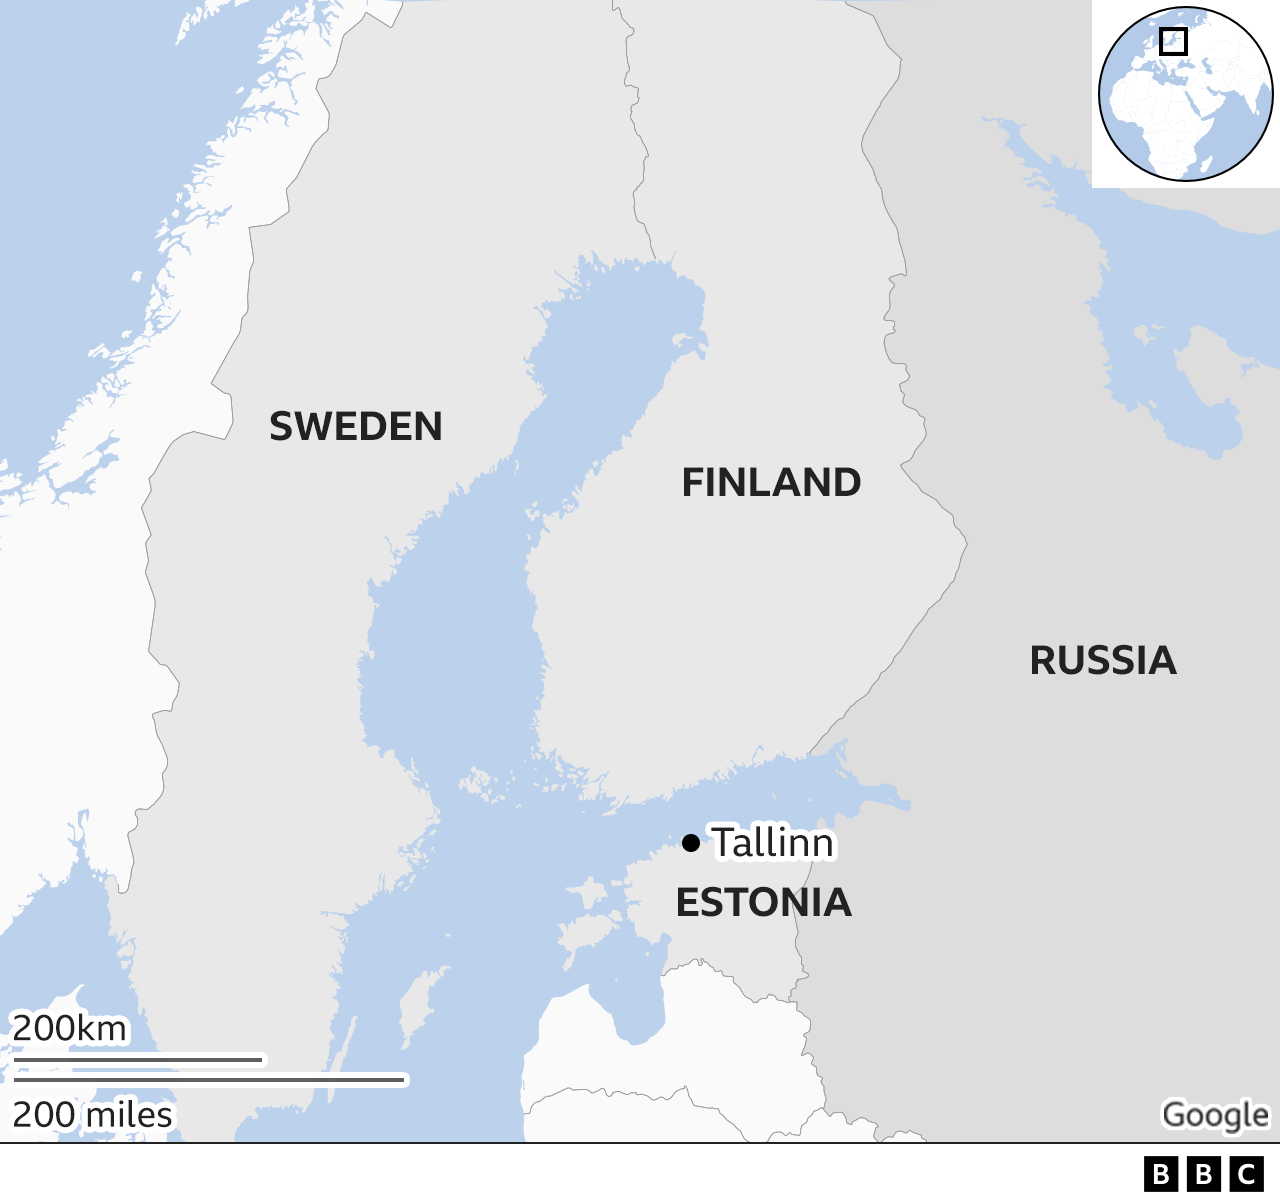  124772443 Estonia Finland Sweden Russia Map X2 Nc 